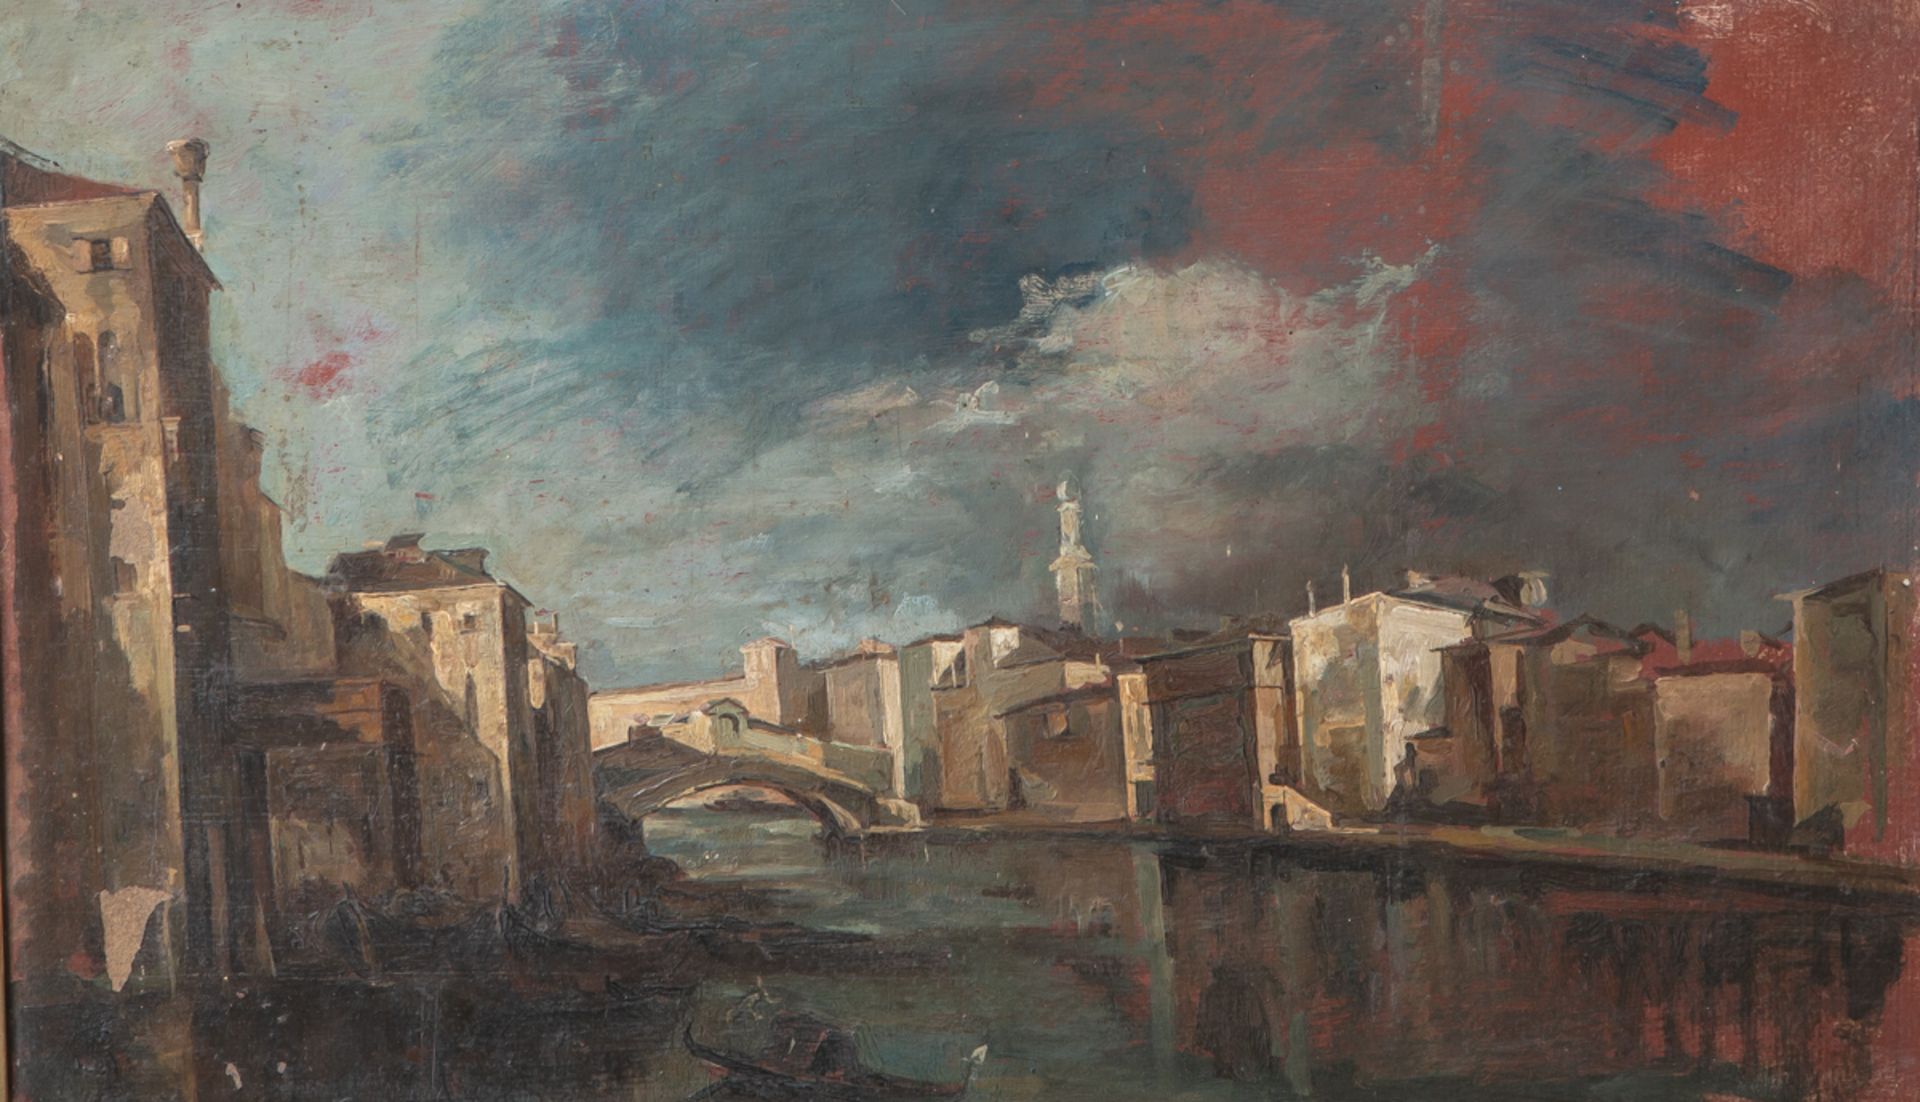 Unbekannter Maler (19./20. Jahrhundert), Ansicht in Venedig, Öl/Malpappe, ca. 34 x 55 cm,gerahmt.